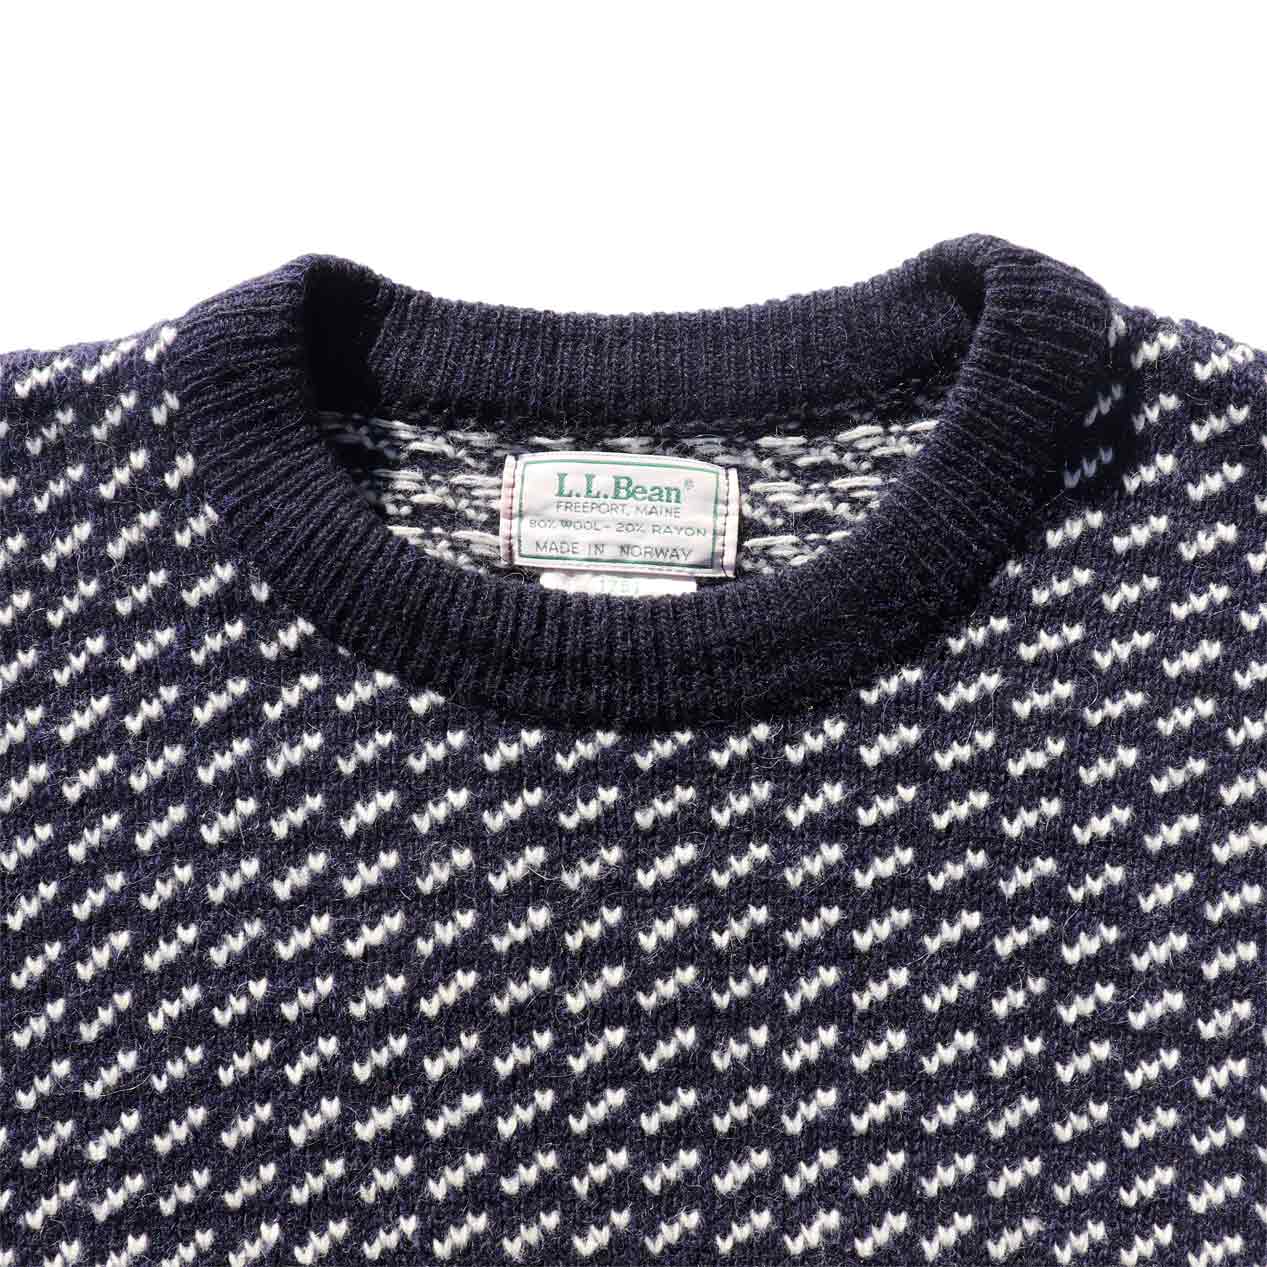 POST JUNK / 80's L.L.BEAN Birds Eye Wool Knit Sweater Made In ...